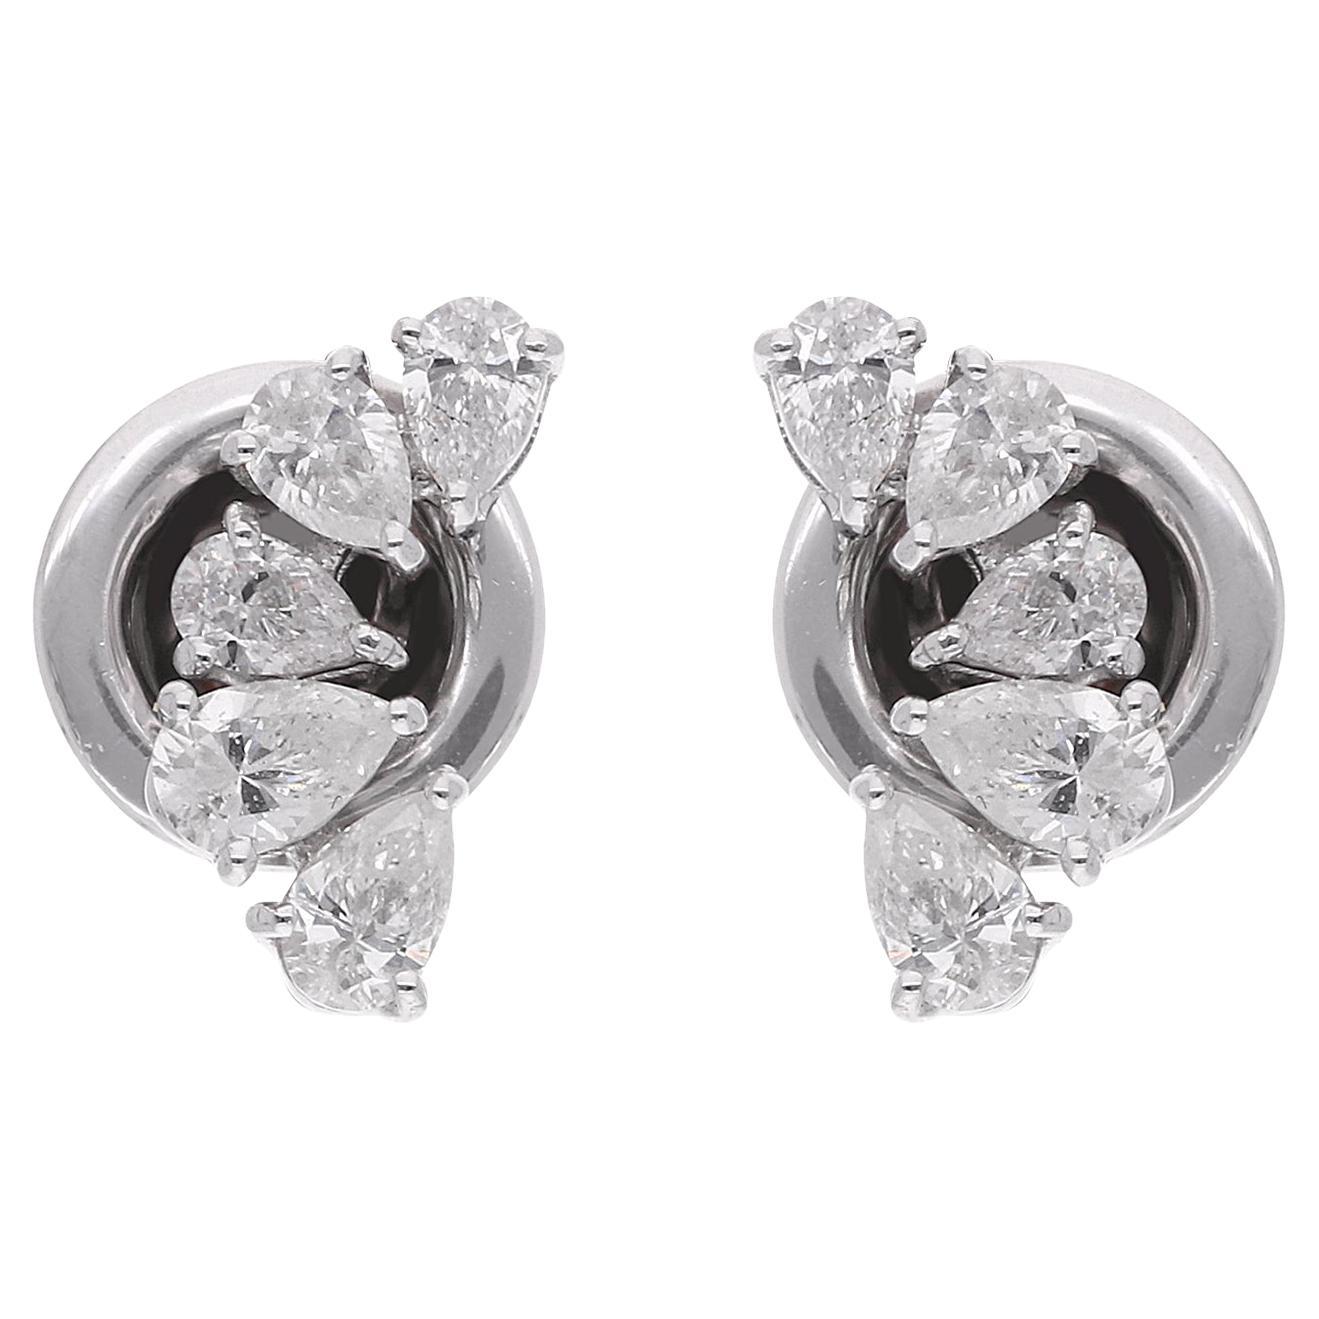 Clous d'oreilles en or blanc 18 carats avec diamants en forme de poire de 0,52 carat, fabrication artisanale